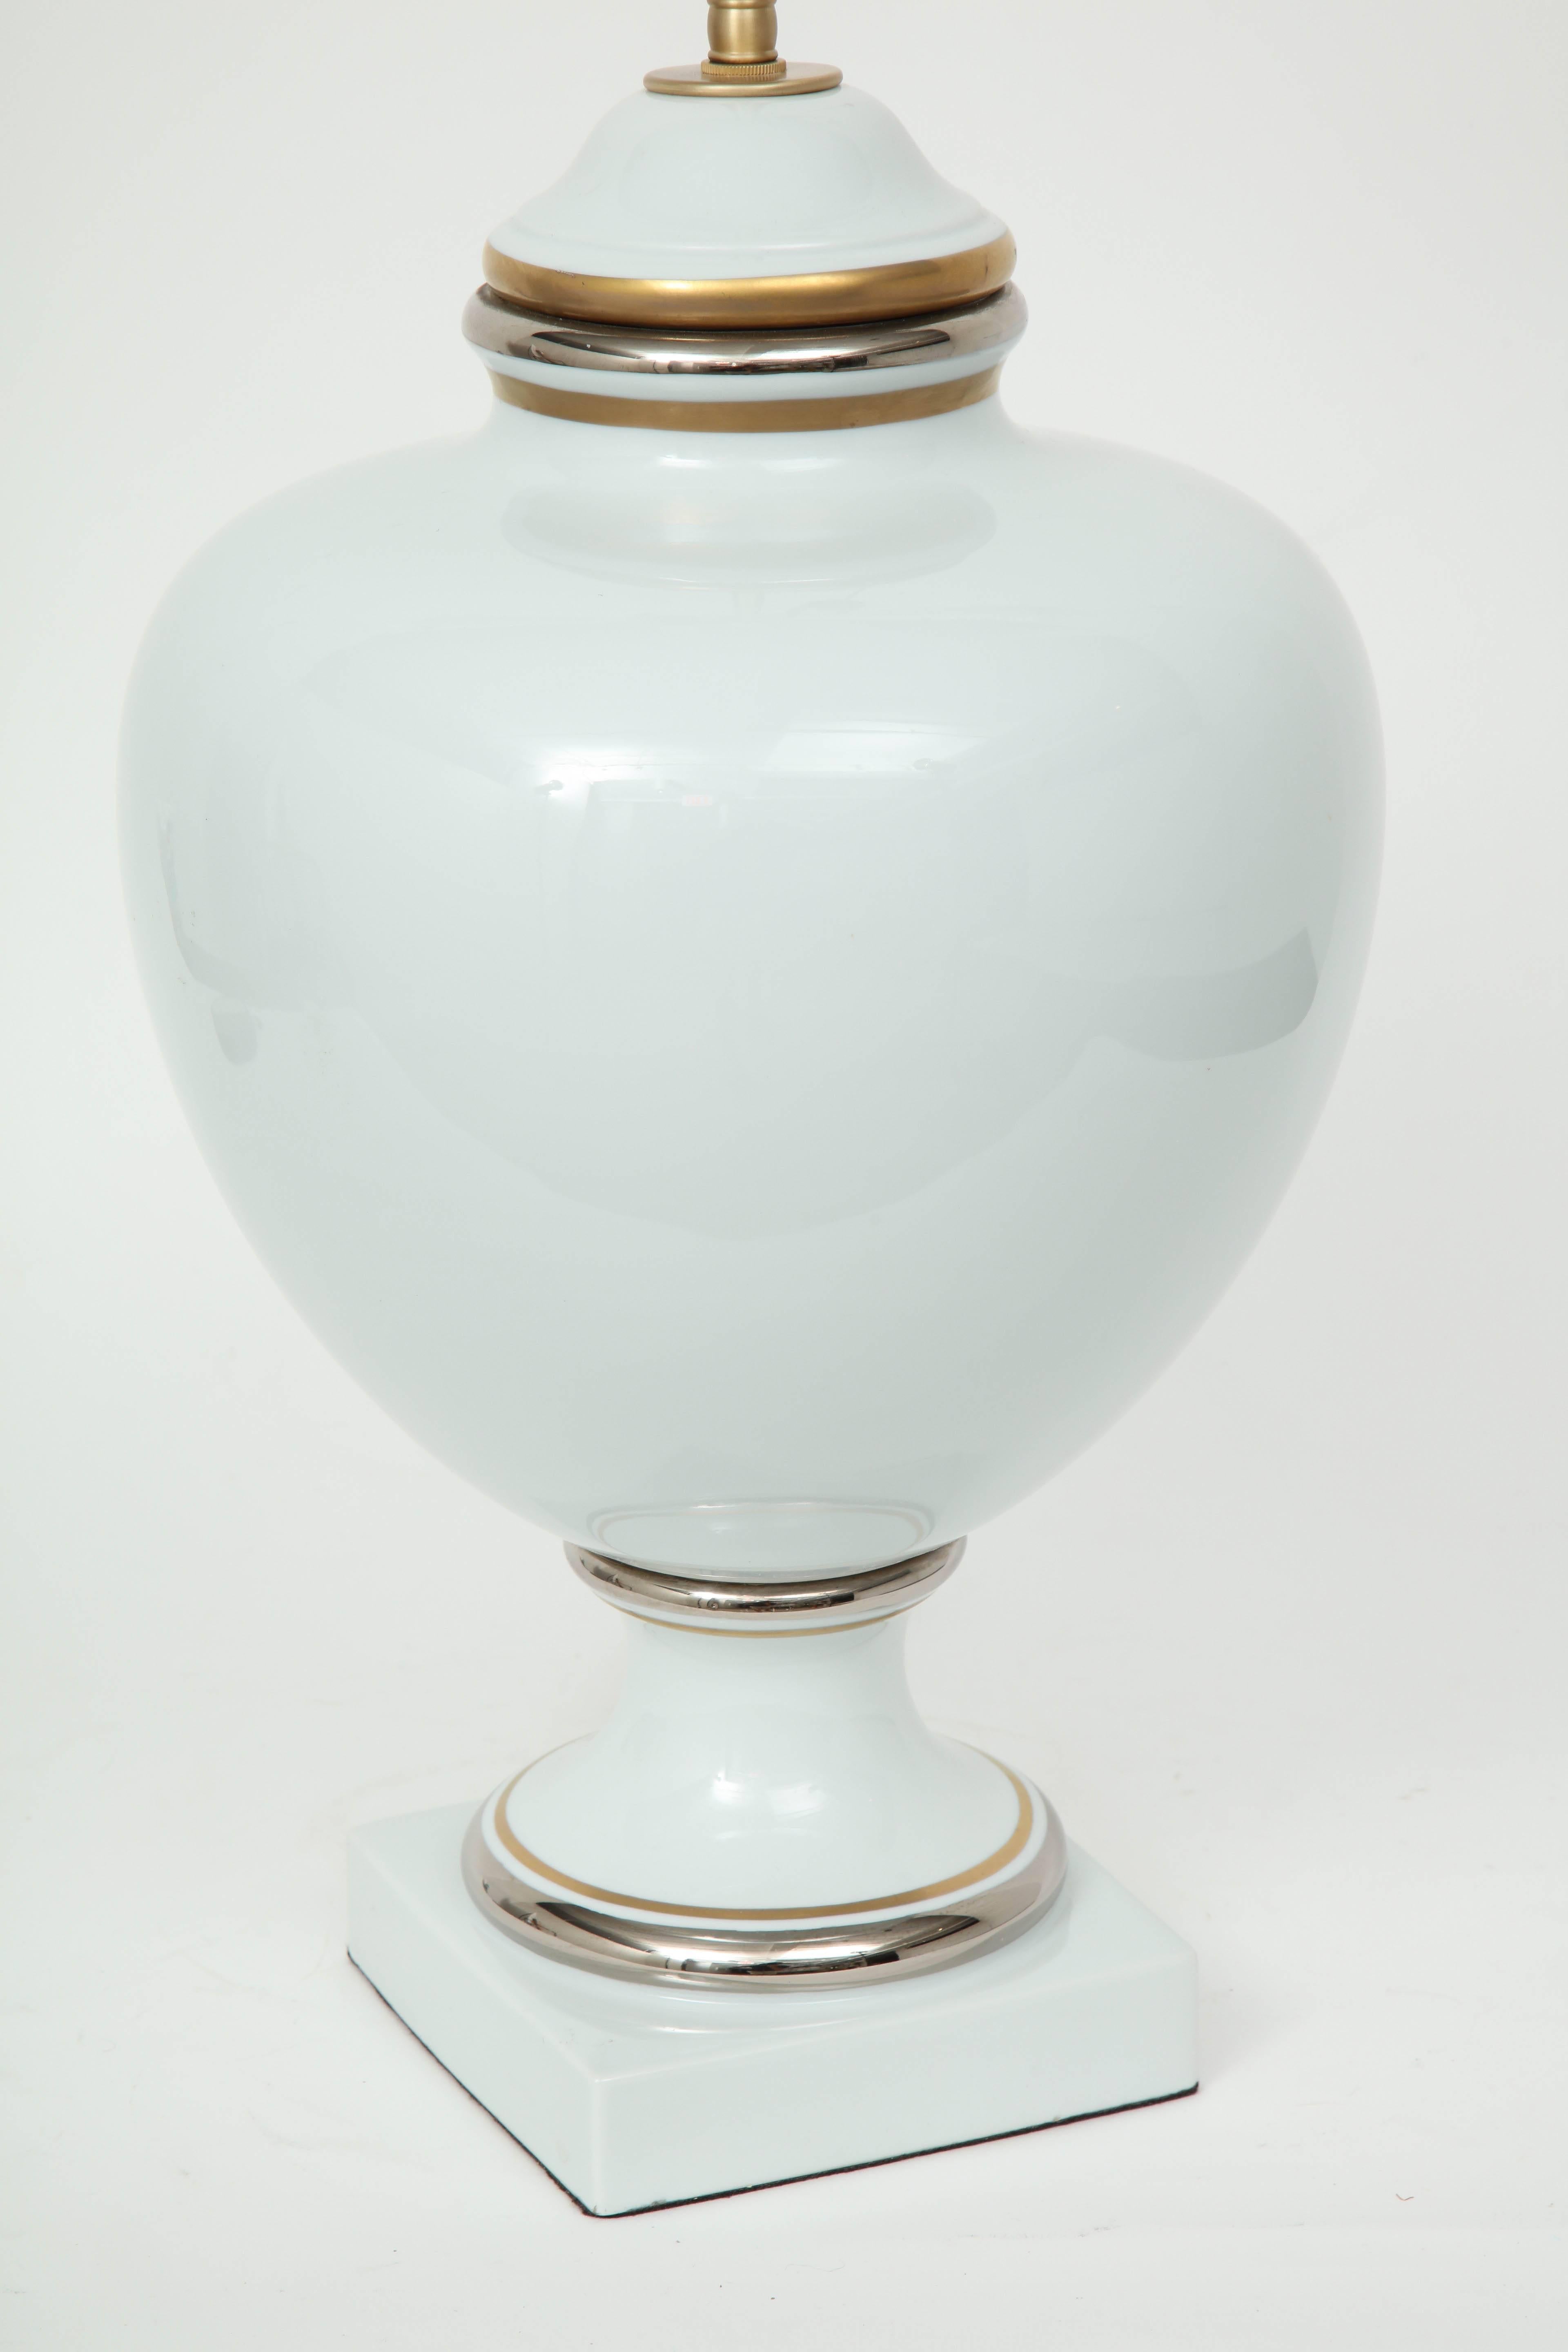 Gold Richard Ginori White Porcelain Lamps